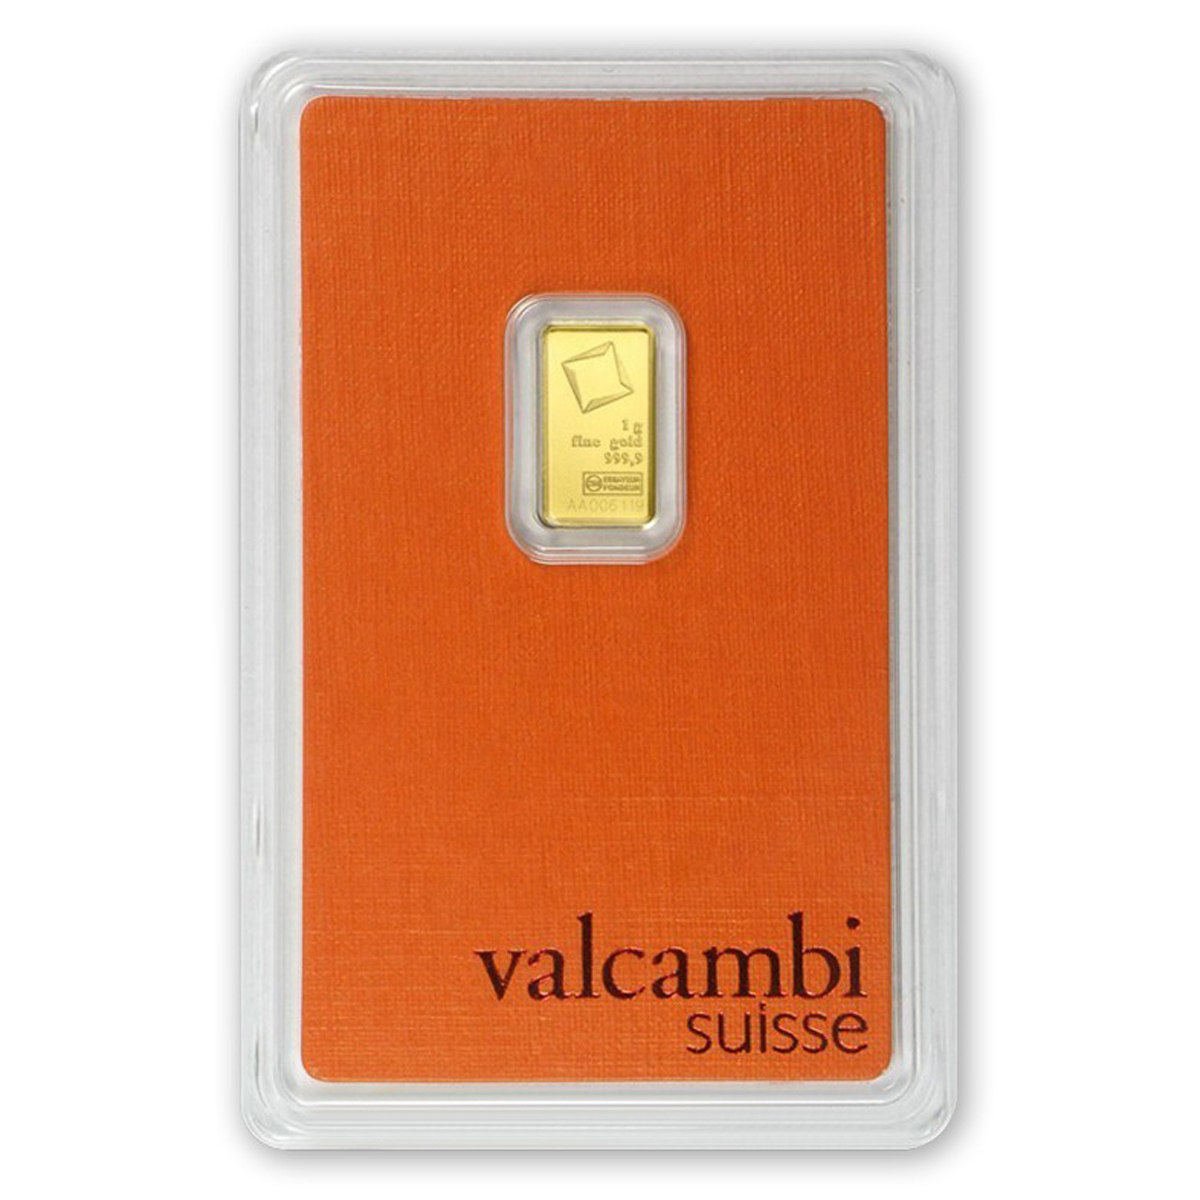 1 גרם מטיל זהב - VALCAMBI